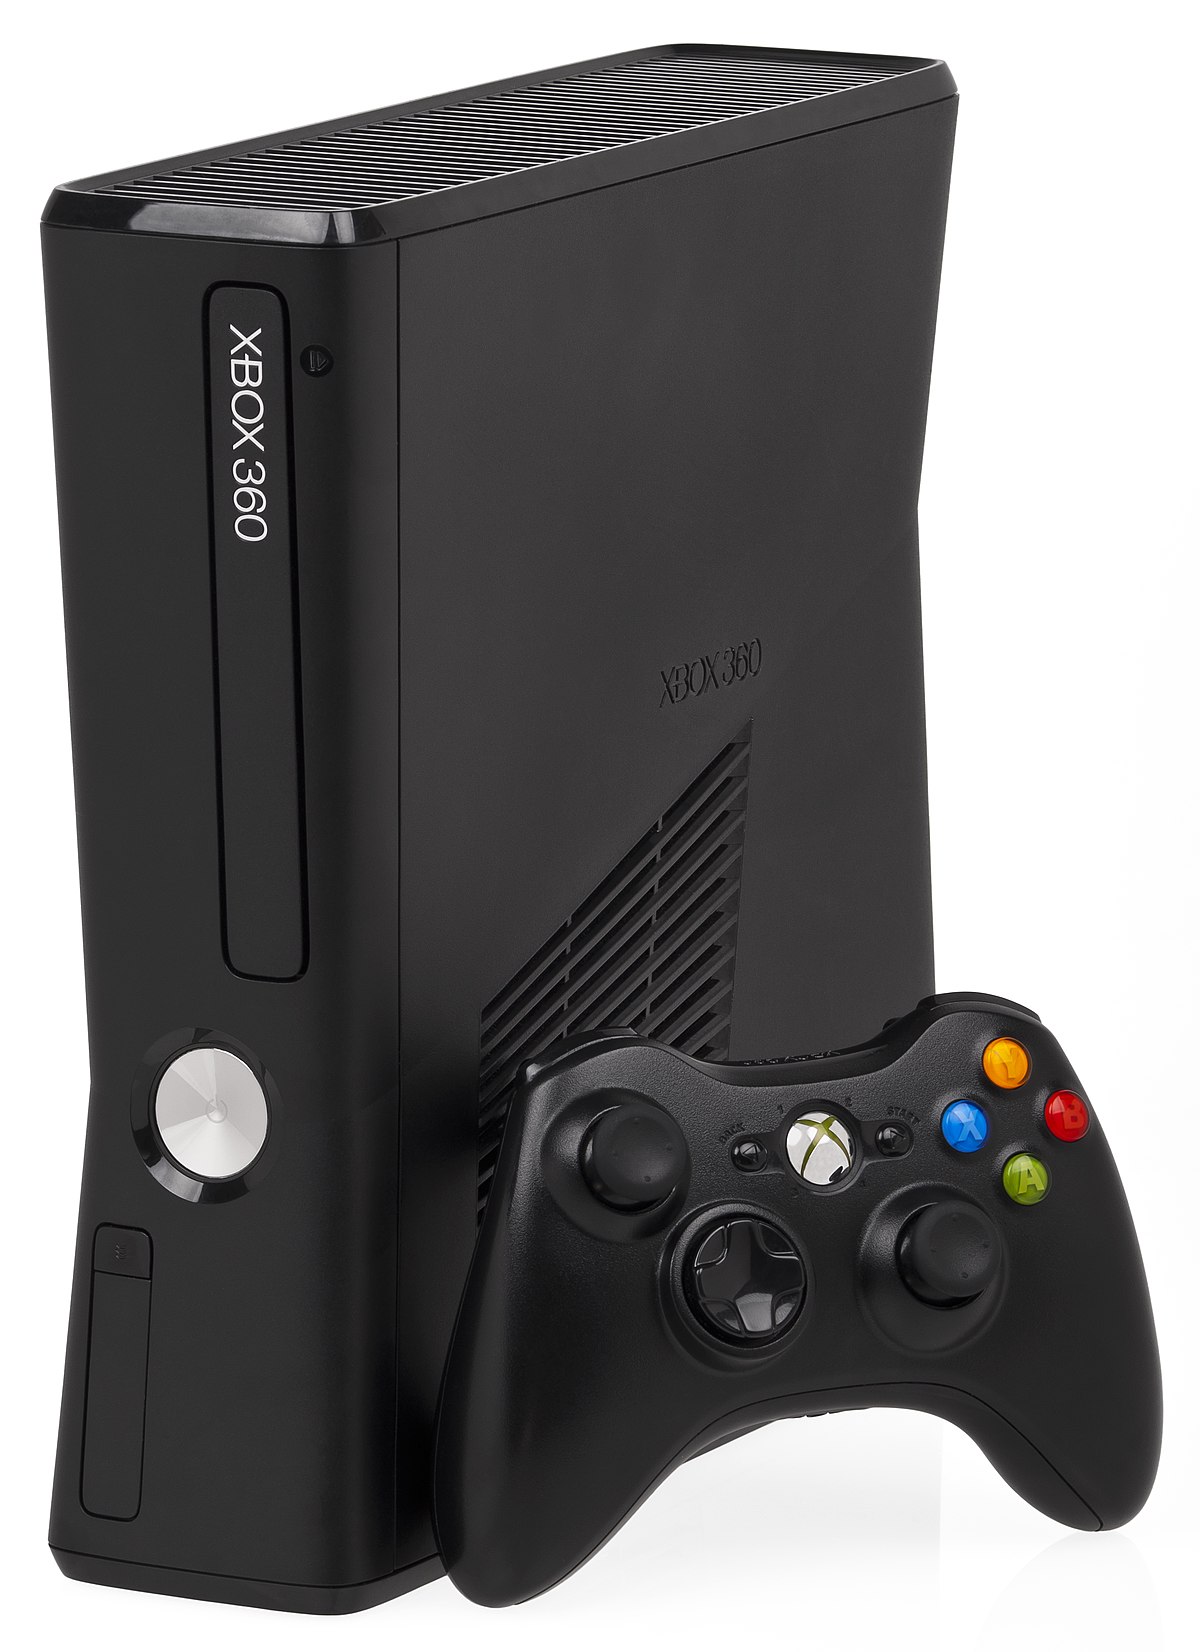 Какой жесткий диск подходит для Xbox 360?